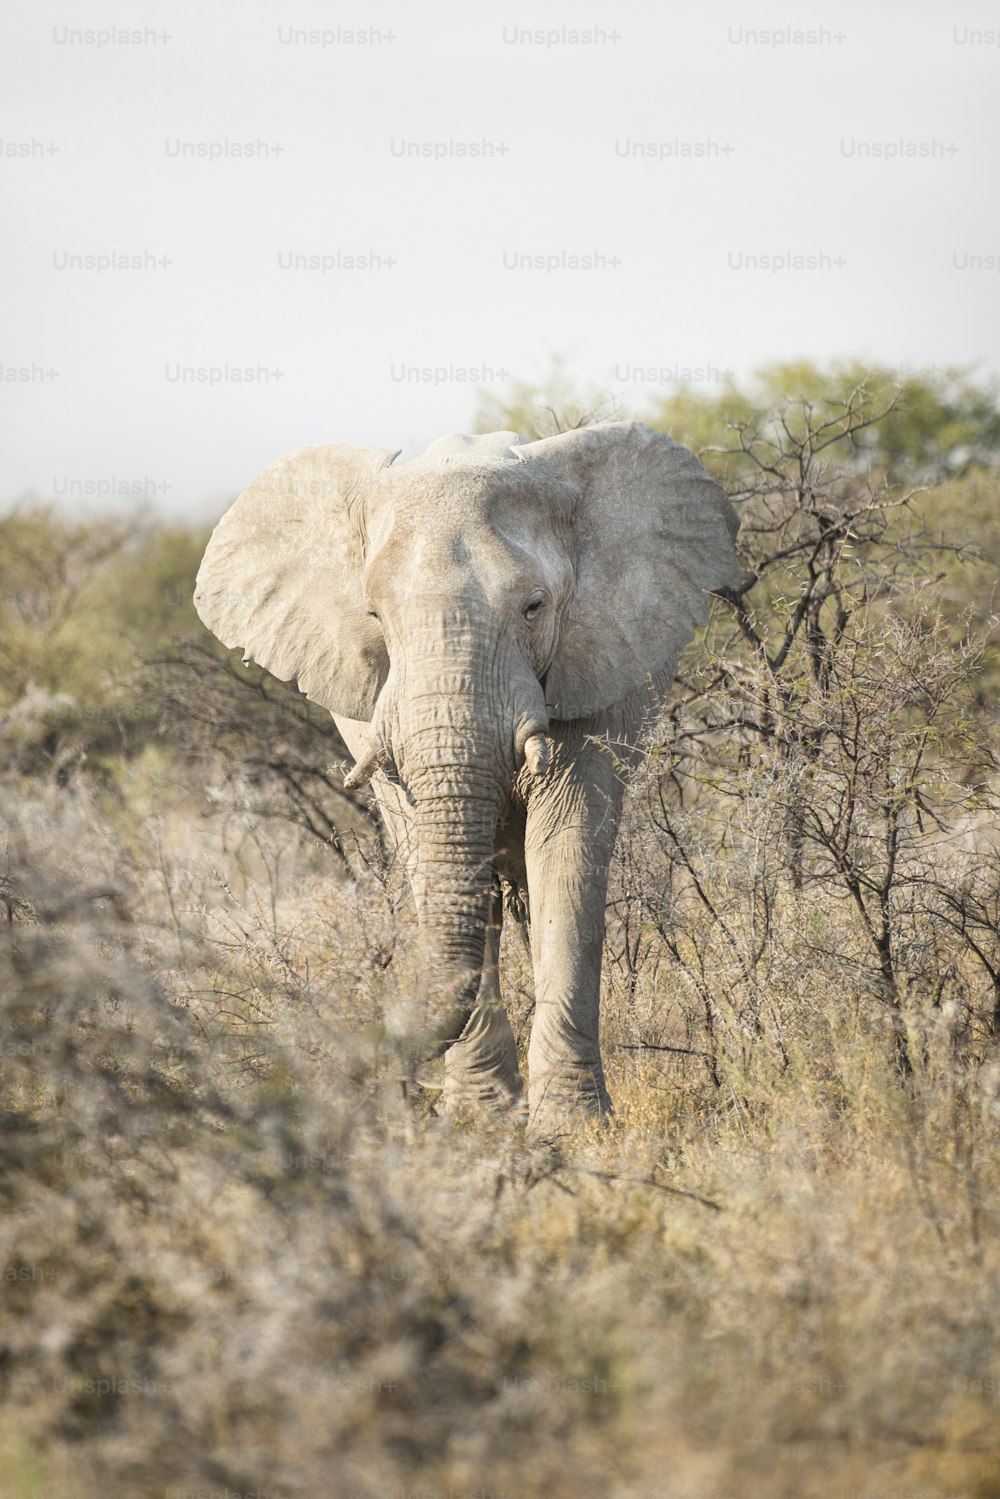 Elephant bull in Etosha National Park.